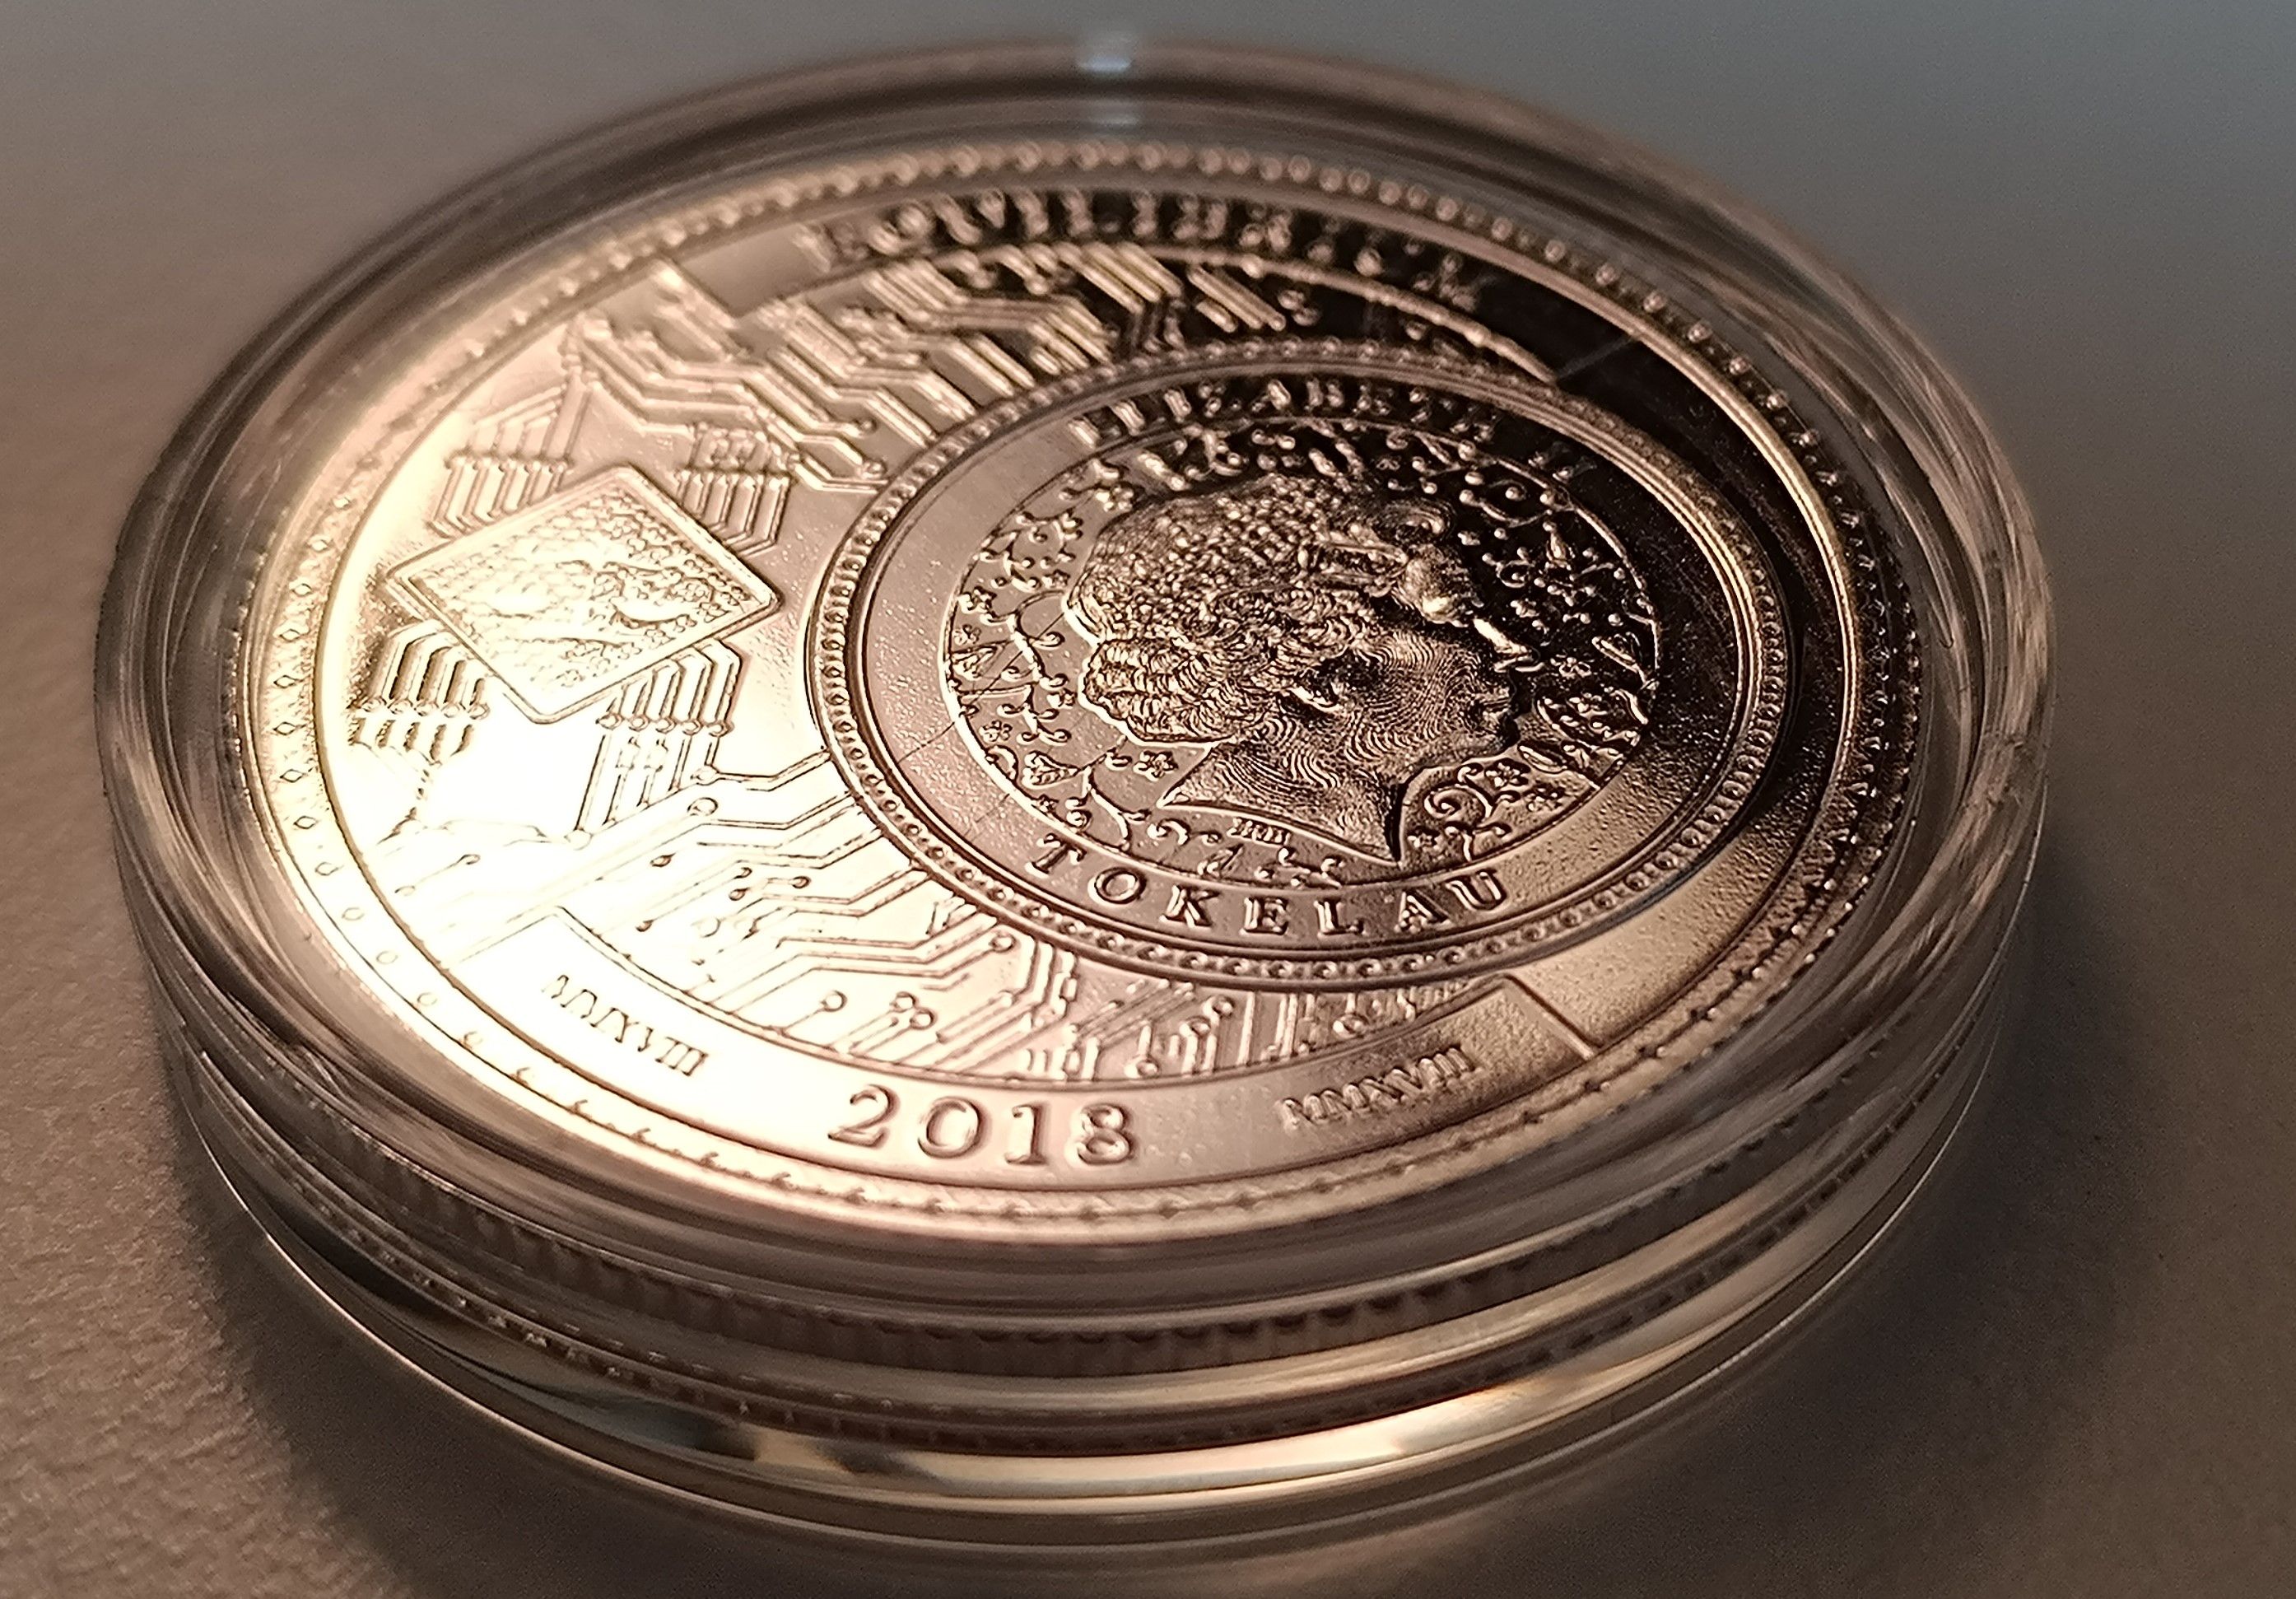 equilibrium 1 oz silver round - 2018 - Pressburg mint (9).jpg